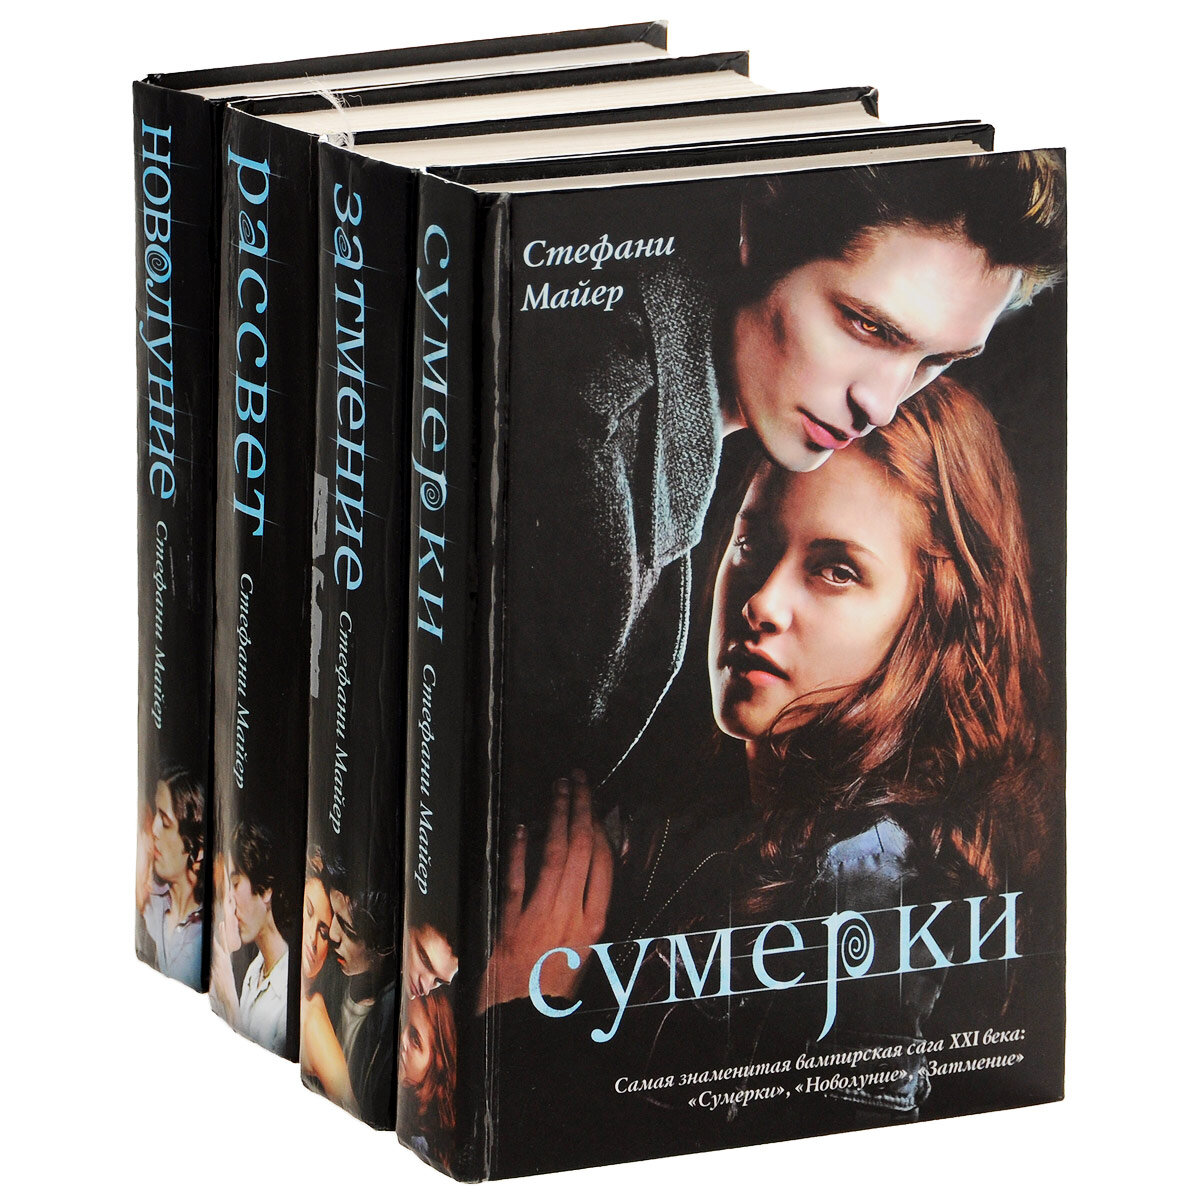 Серия книг "Сумерки". Фото взято из Яндекса